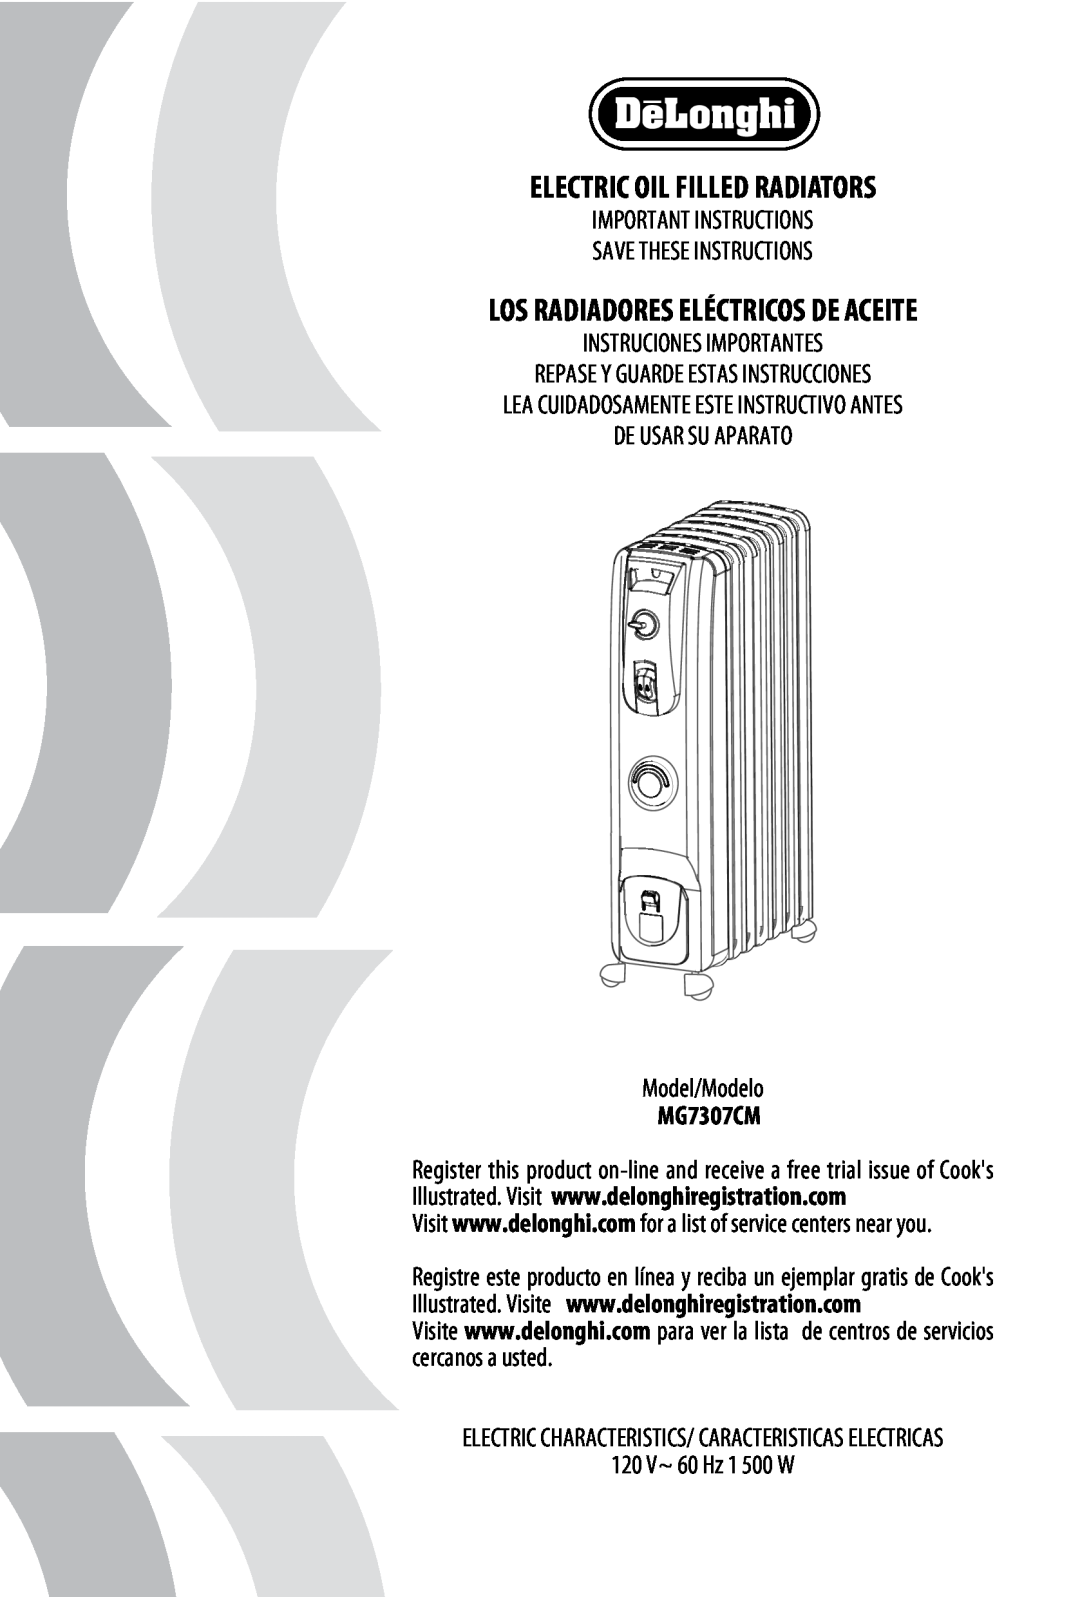 DeLonghi MG7307CM manual Electric Oil Filled Radiators, Los Radiadores Eléctricos De Aceite 